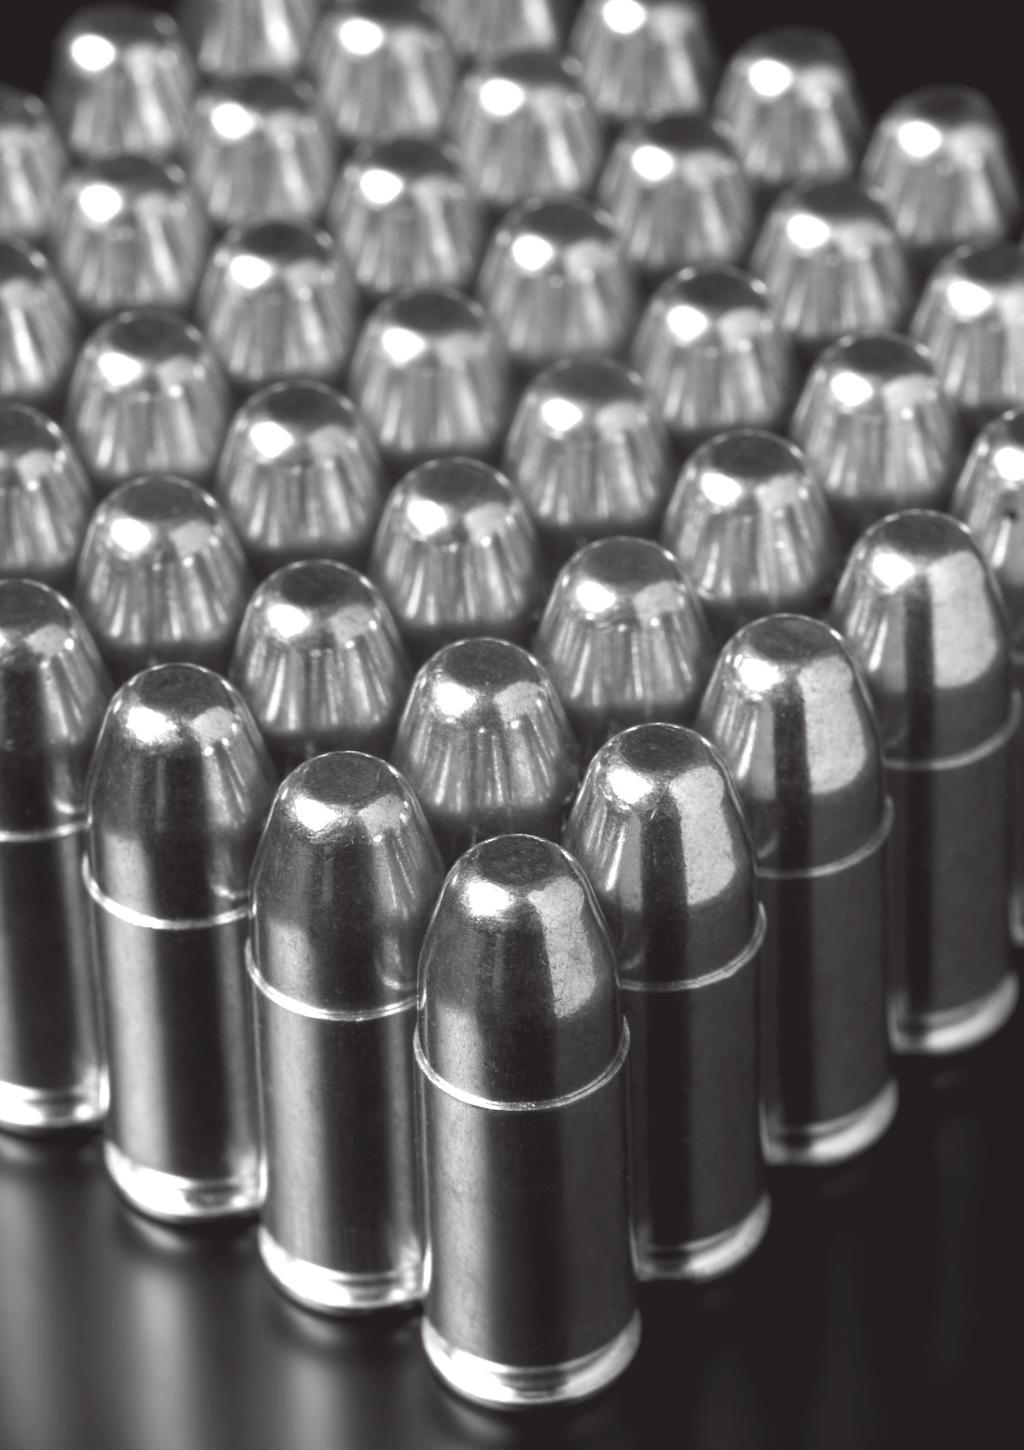 MUNICIONES Fabricaciones Militares ofrece dentro de su variada producción de munición en distintos tipos y calibres, destinadas mayormente al consumo de las Fuerzas Armadas y de Seguridad, la